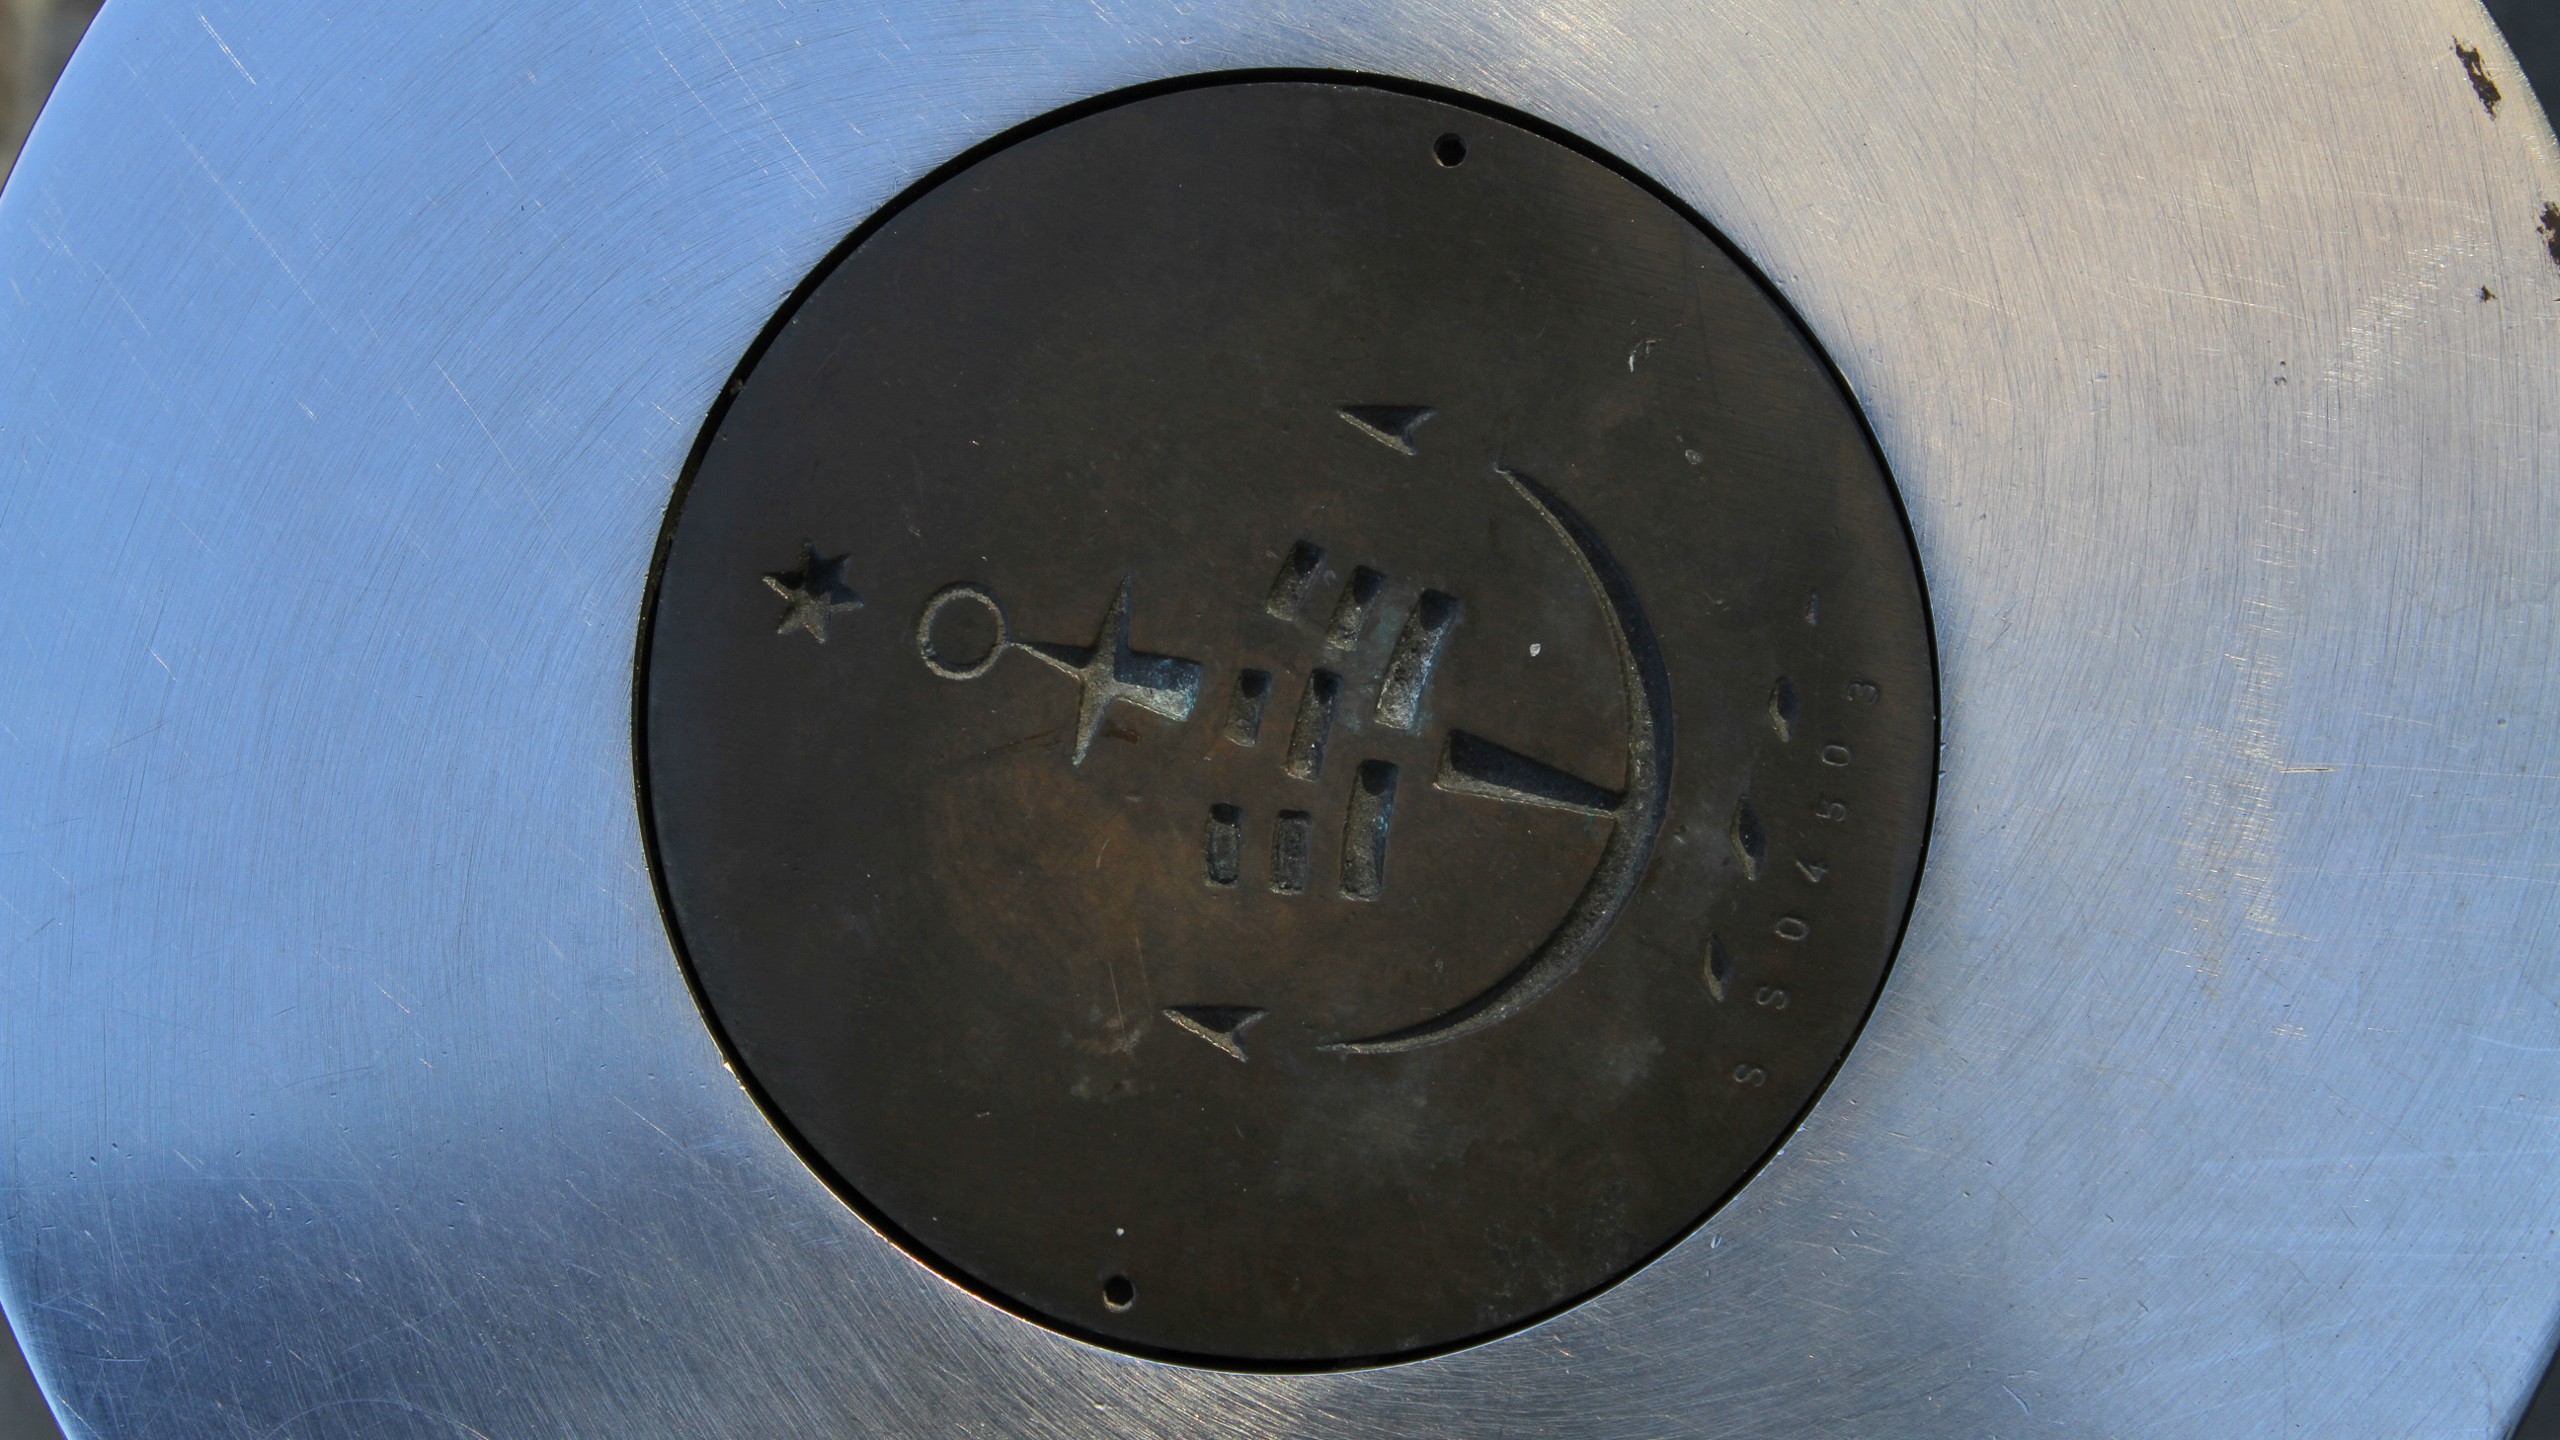 General 2560x1440 anchors plates metal closeup